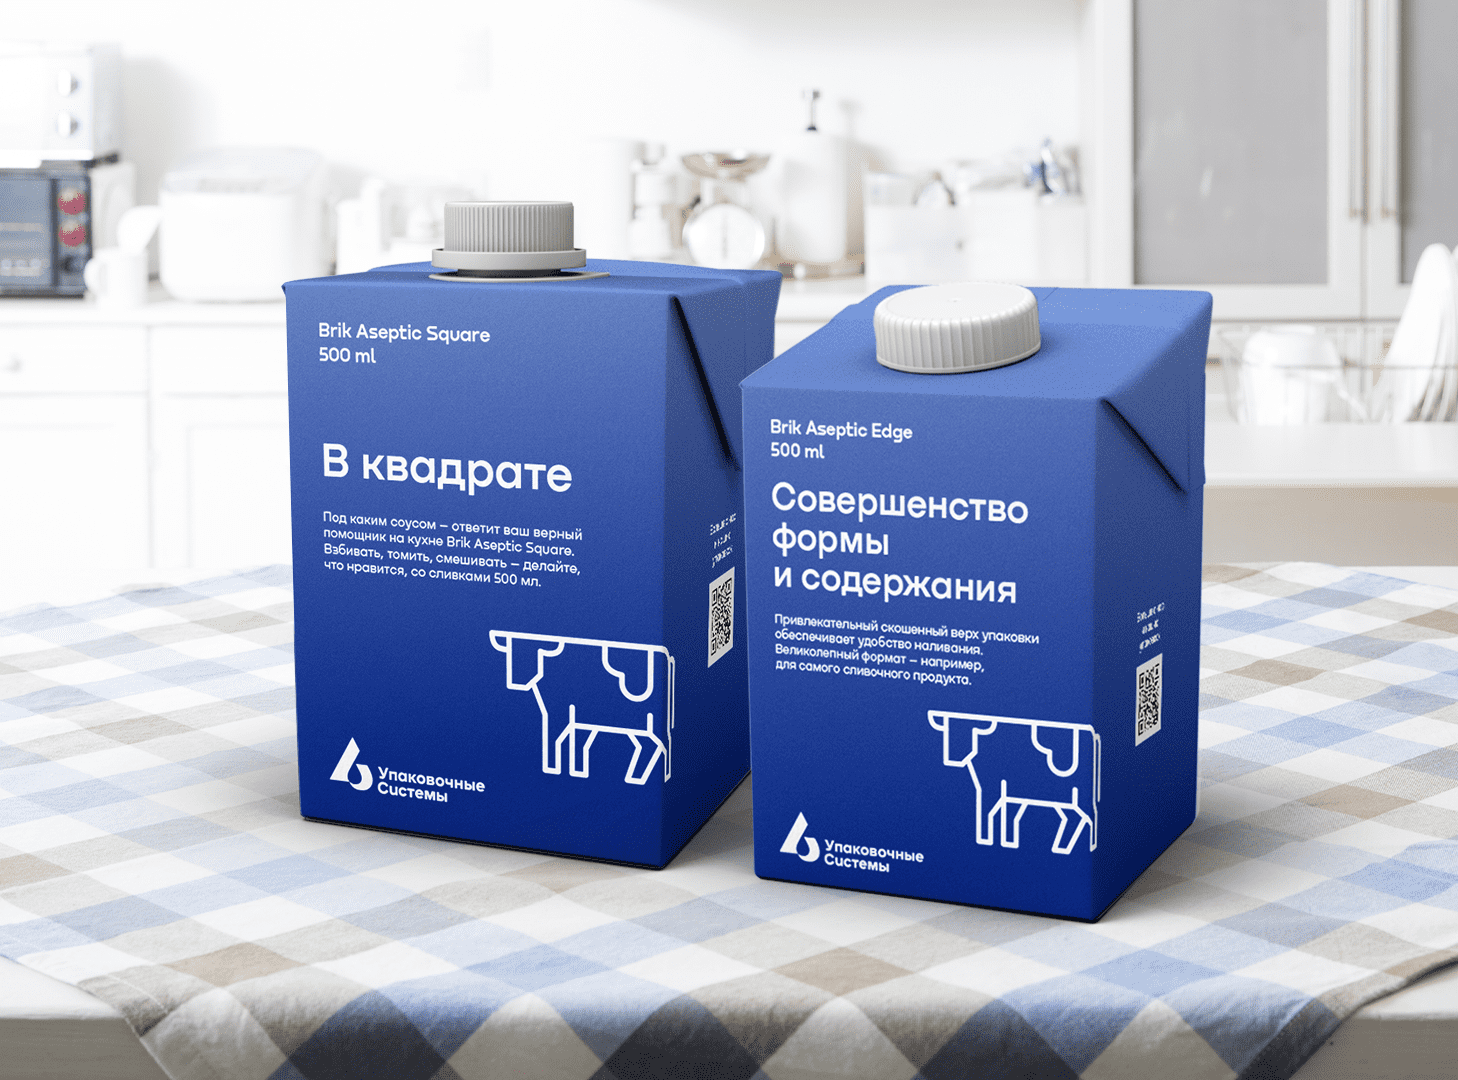 Компания «Упаковочные системы» запускает производство полулитровой упаковки с крышкой для молочных продуктов 